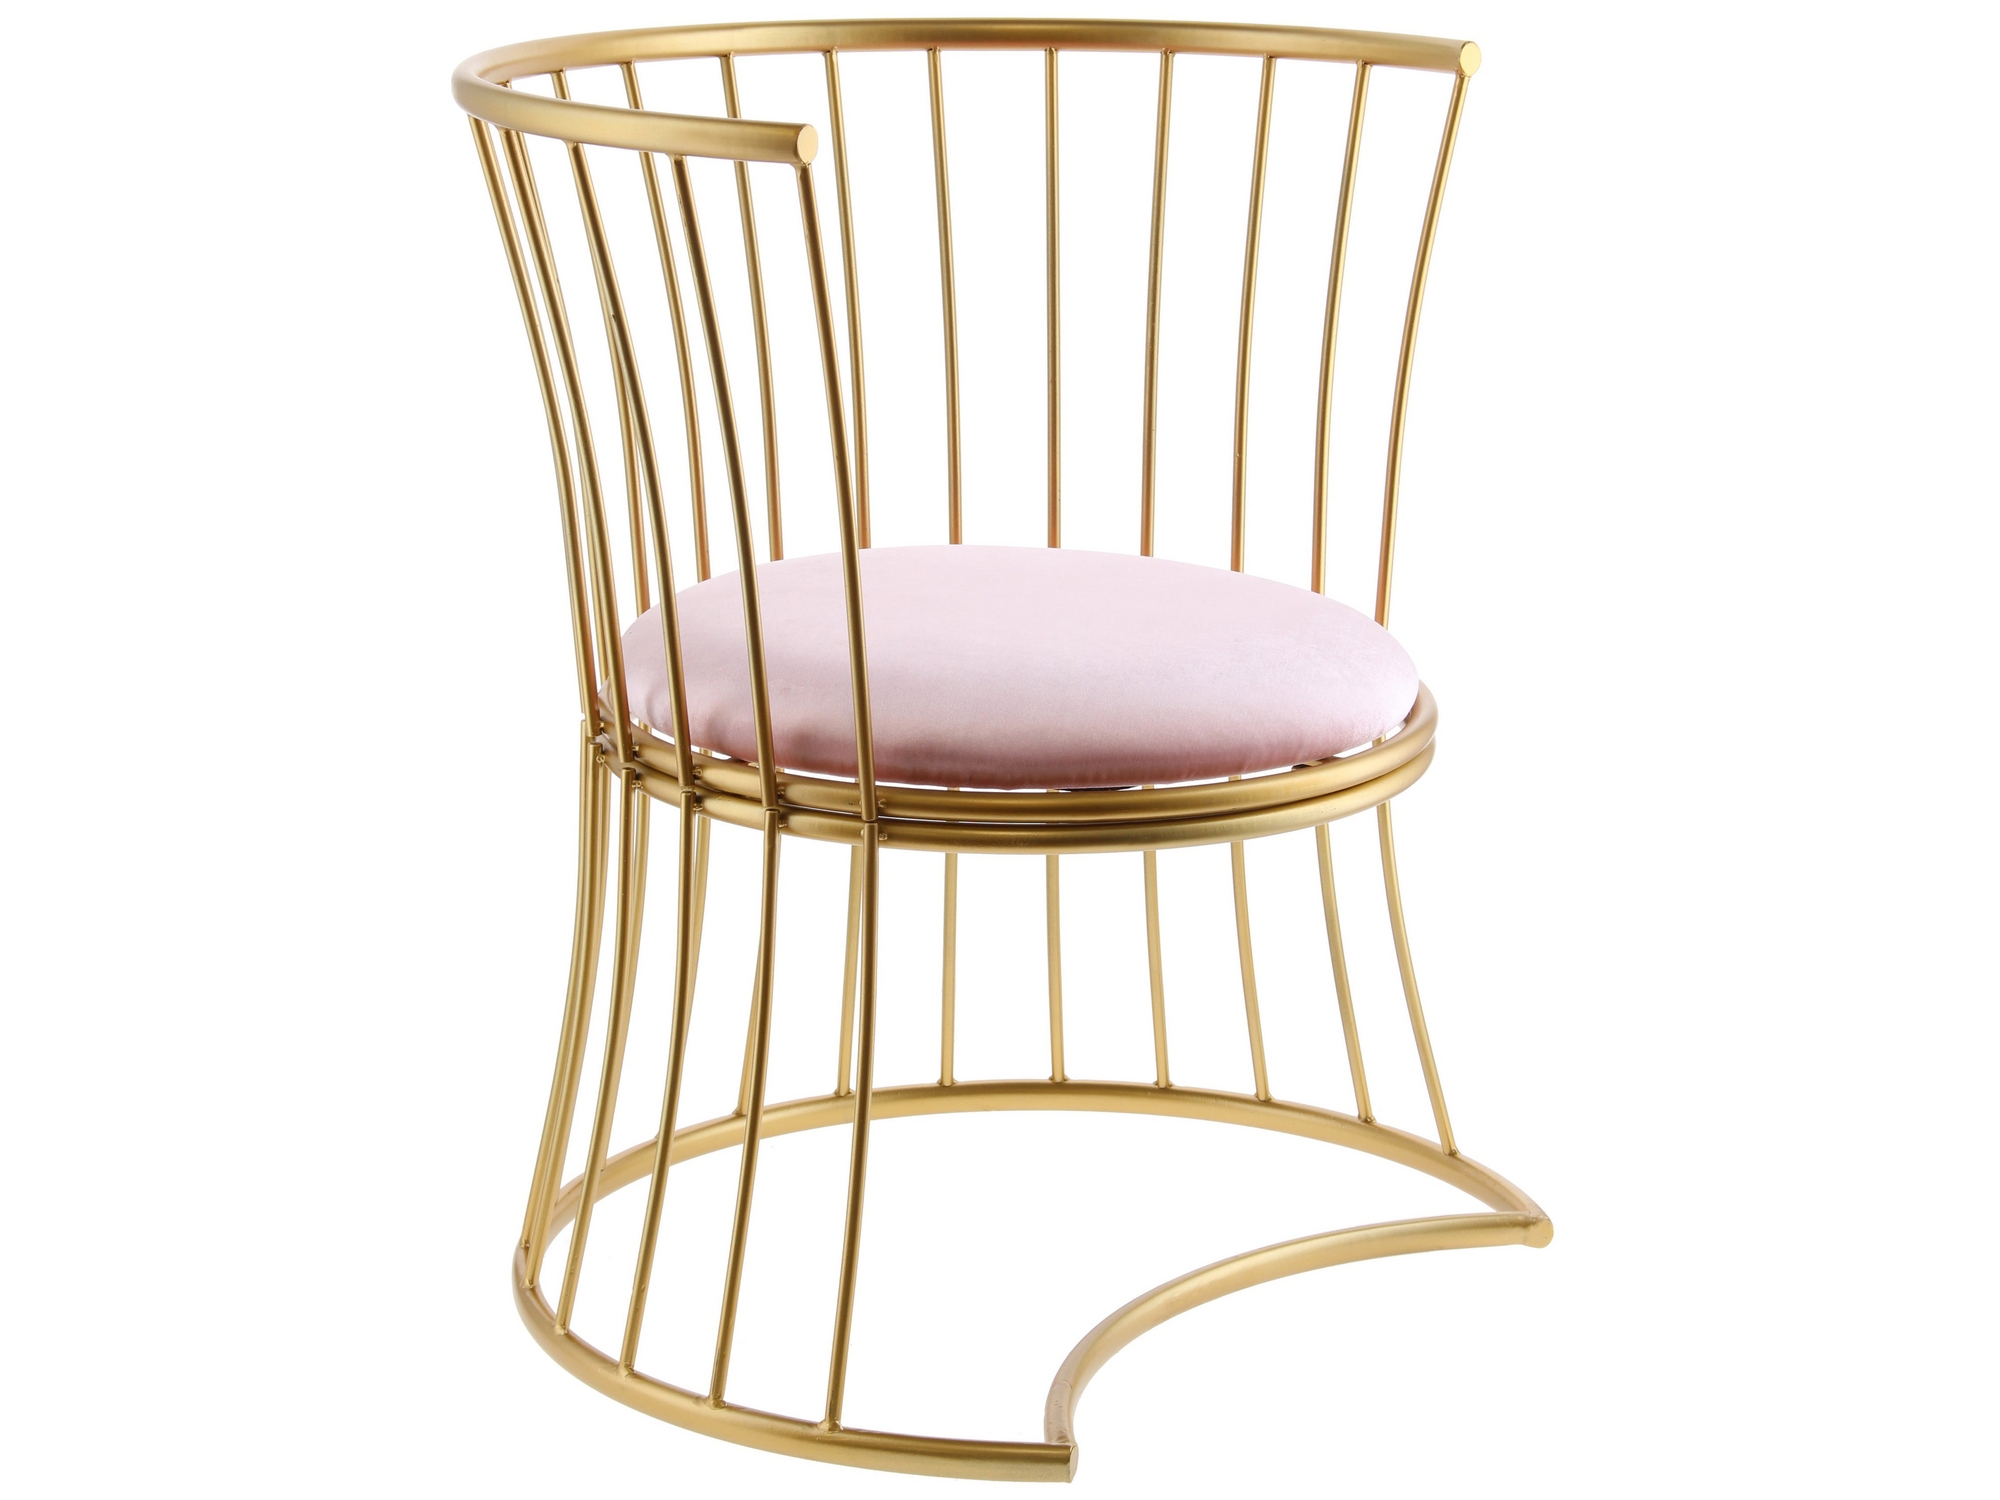 Poltrona metálica en tono cobre, con líneas curvas y asiento rosado de tela